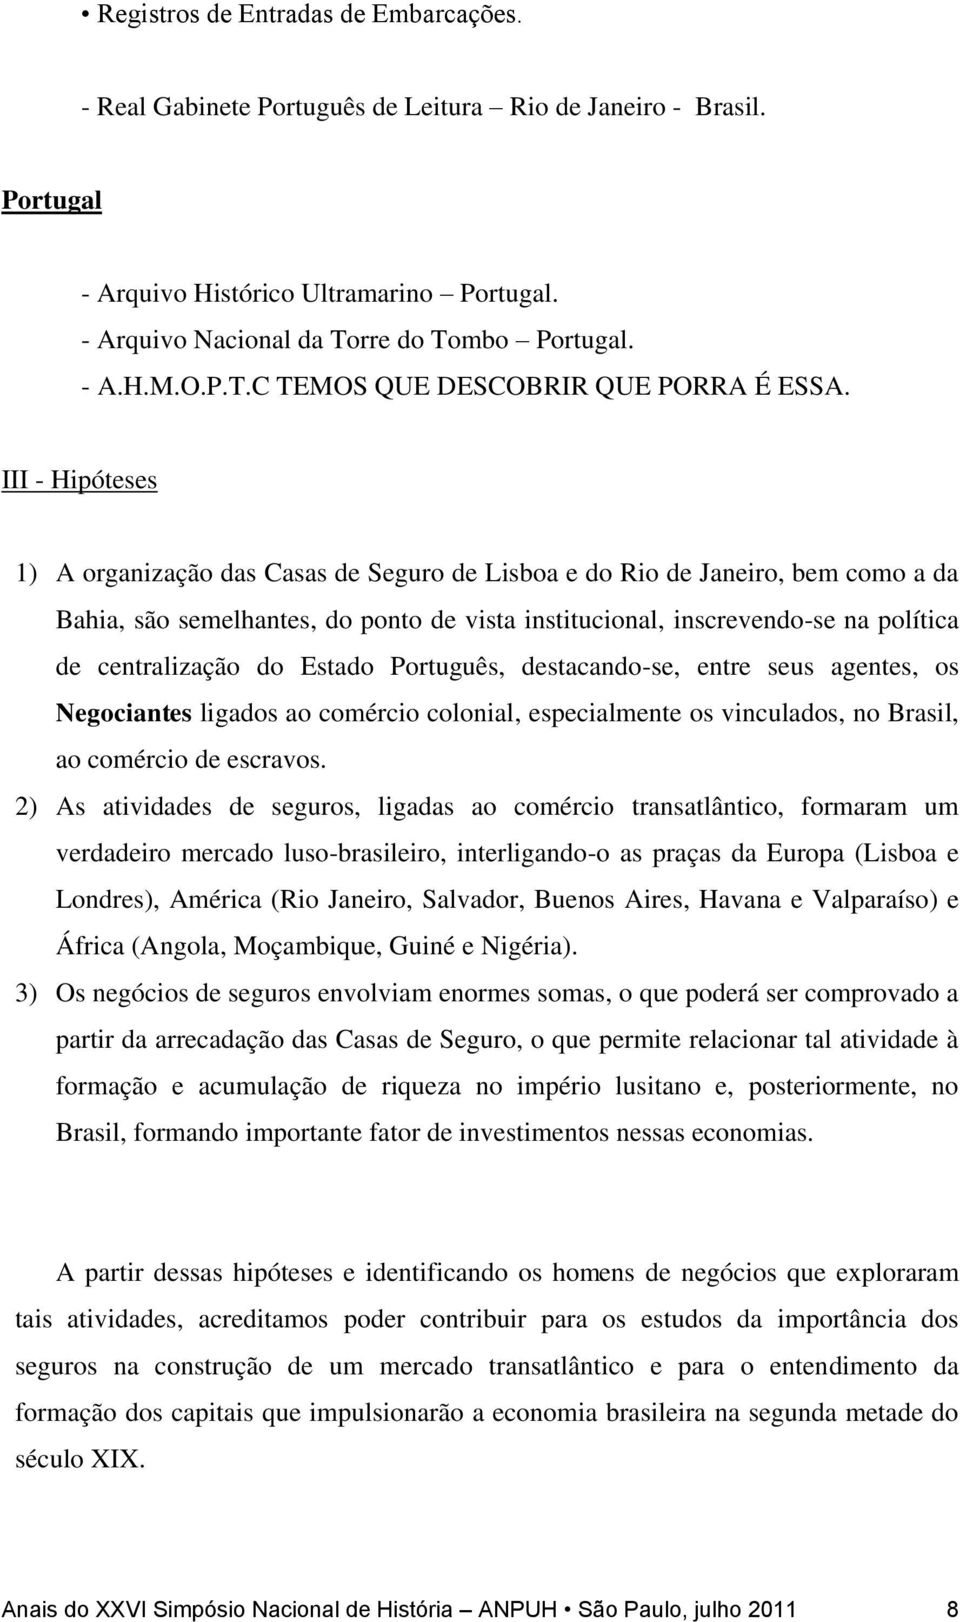 III - Hipóteses 1) A organização das Casas de Seguro de Lisboa e do Rio de Janeiro, bem como a da Bahia, são semelhantes, do ponto de vista institucional, inscrevendo-se na política de centralização